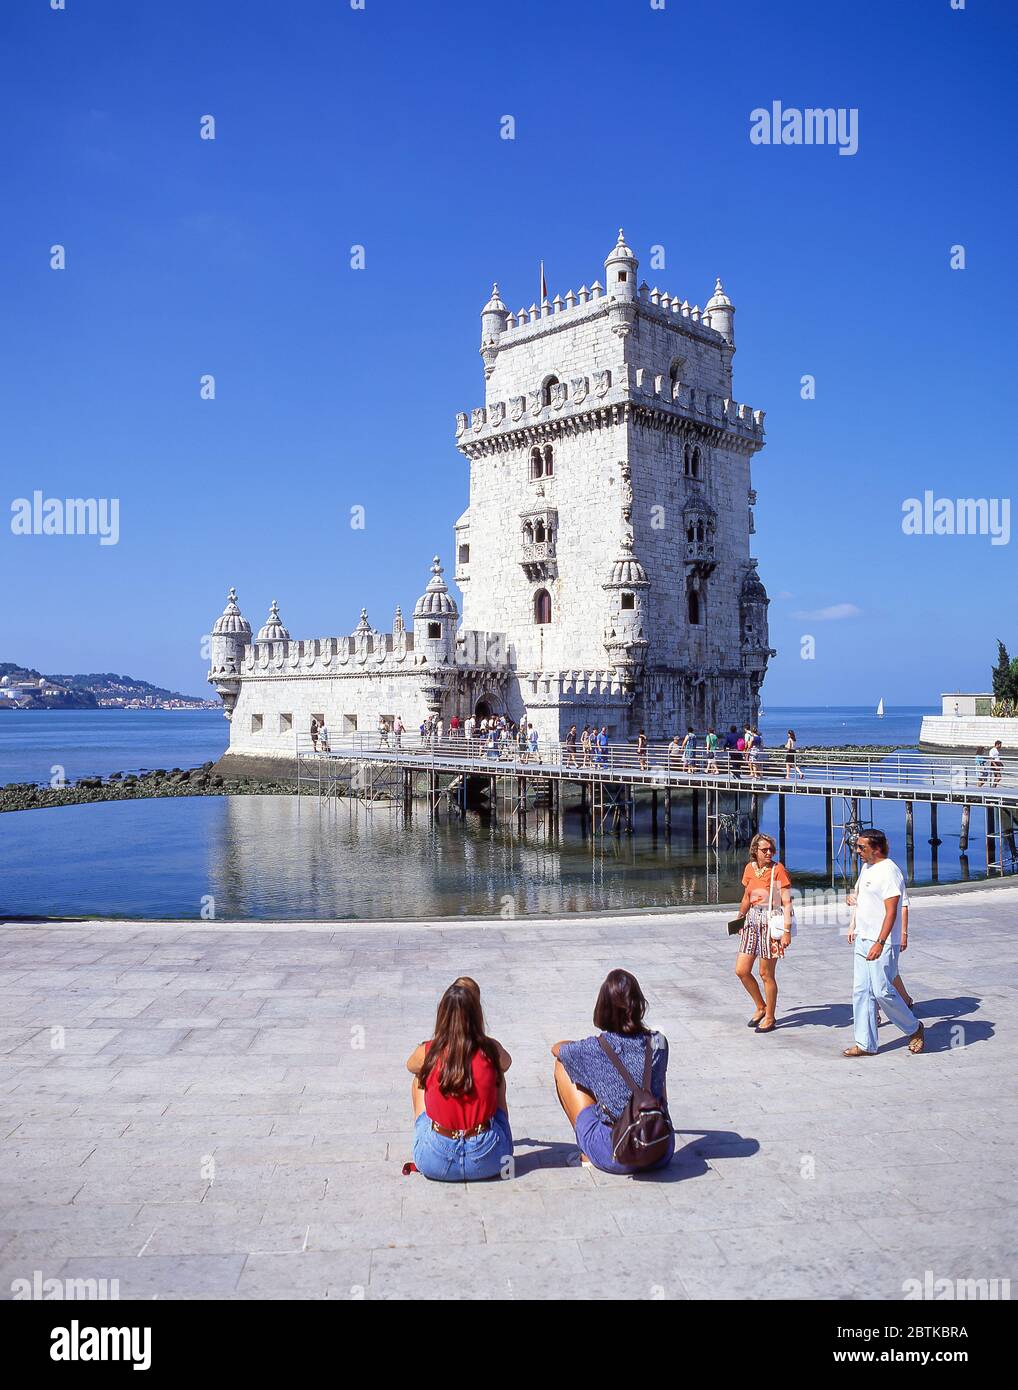 Tour Belém du XVIe siècle (Torre de Belem) sur les rives du Tage, quartier Belém, Lisbonne, Portugal Banque D'Images